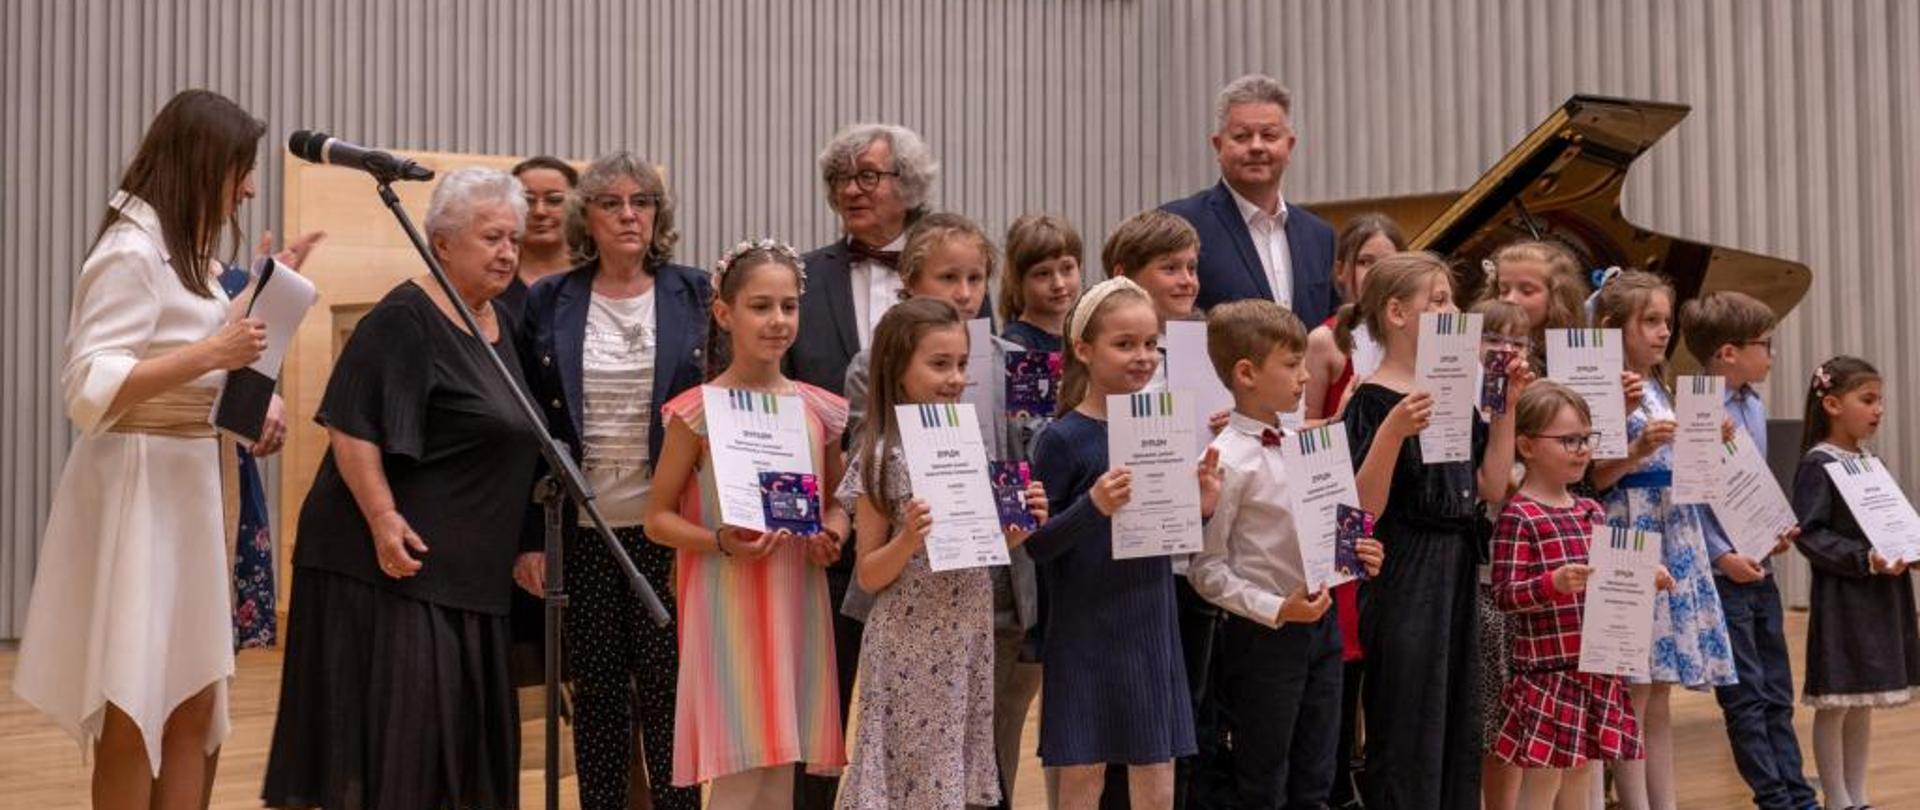 Zdjęcie przedstawiające laureatów Ogólnopolskiego "Łowieckiego" Konkursu Miniatur Fortepianowych we Wrocławiu. Laureaci stoją z dyplomami na scenie w towarzystwie jurorów.